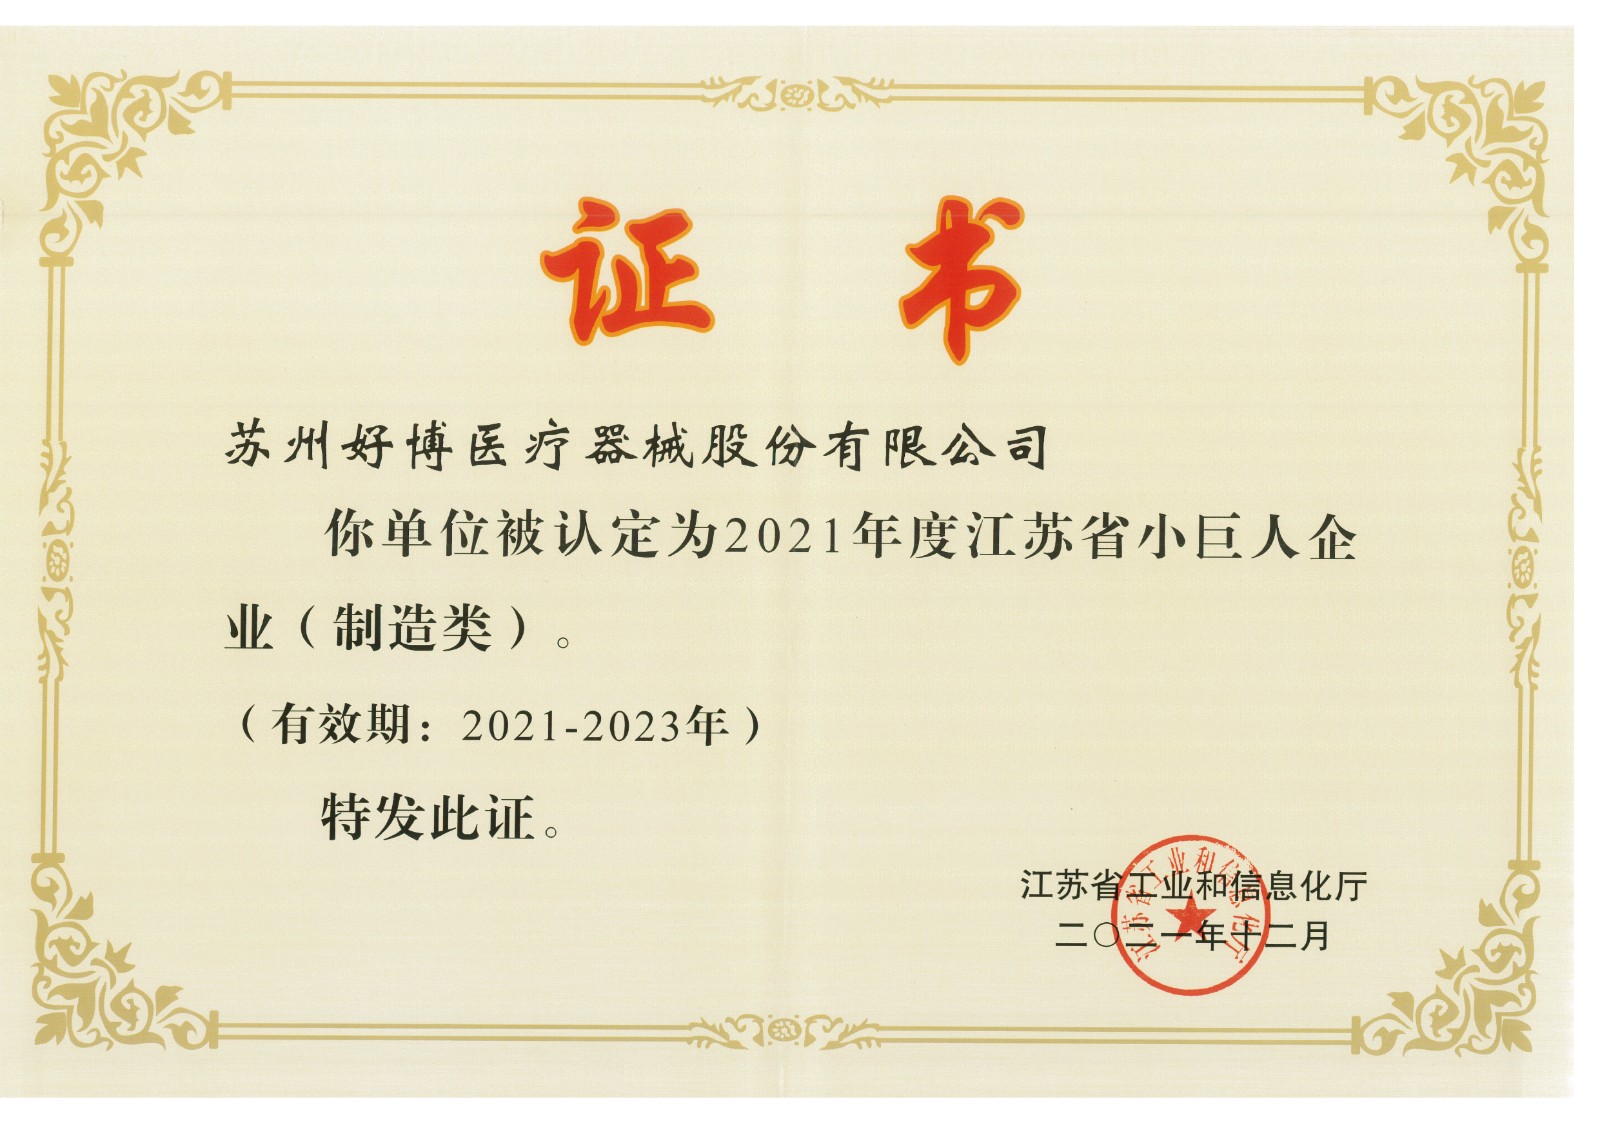 A-001-61 小巨人企业认证证书2021-2023.jpg